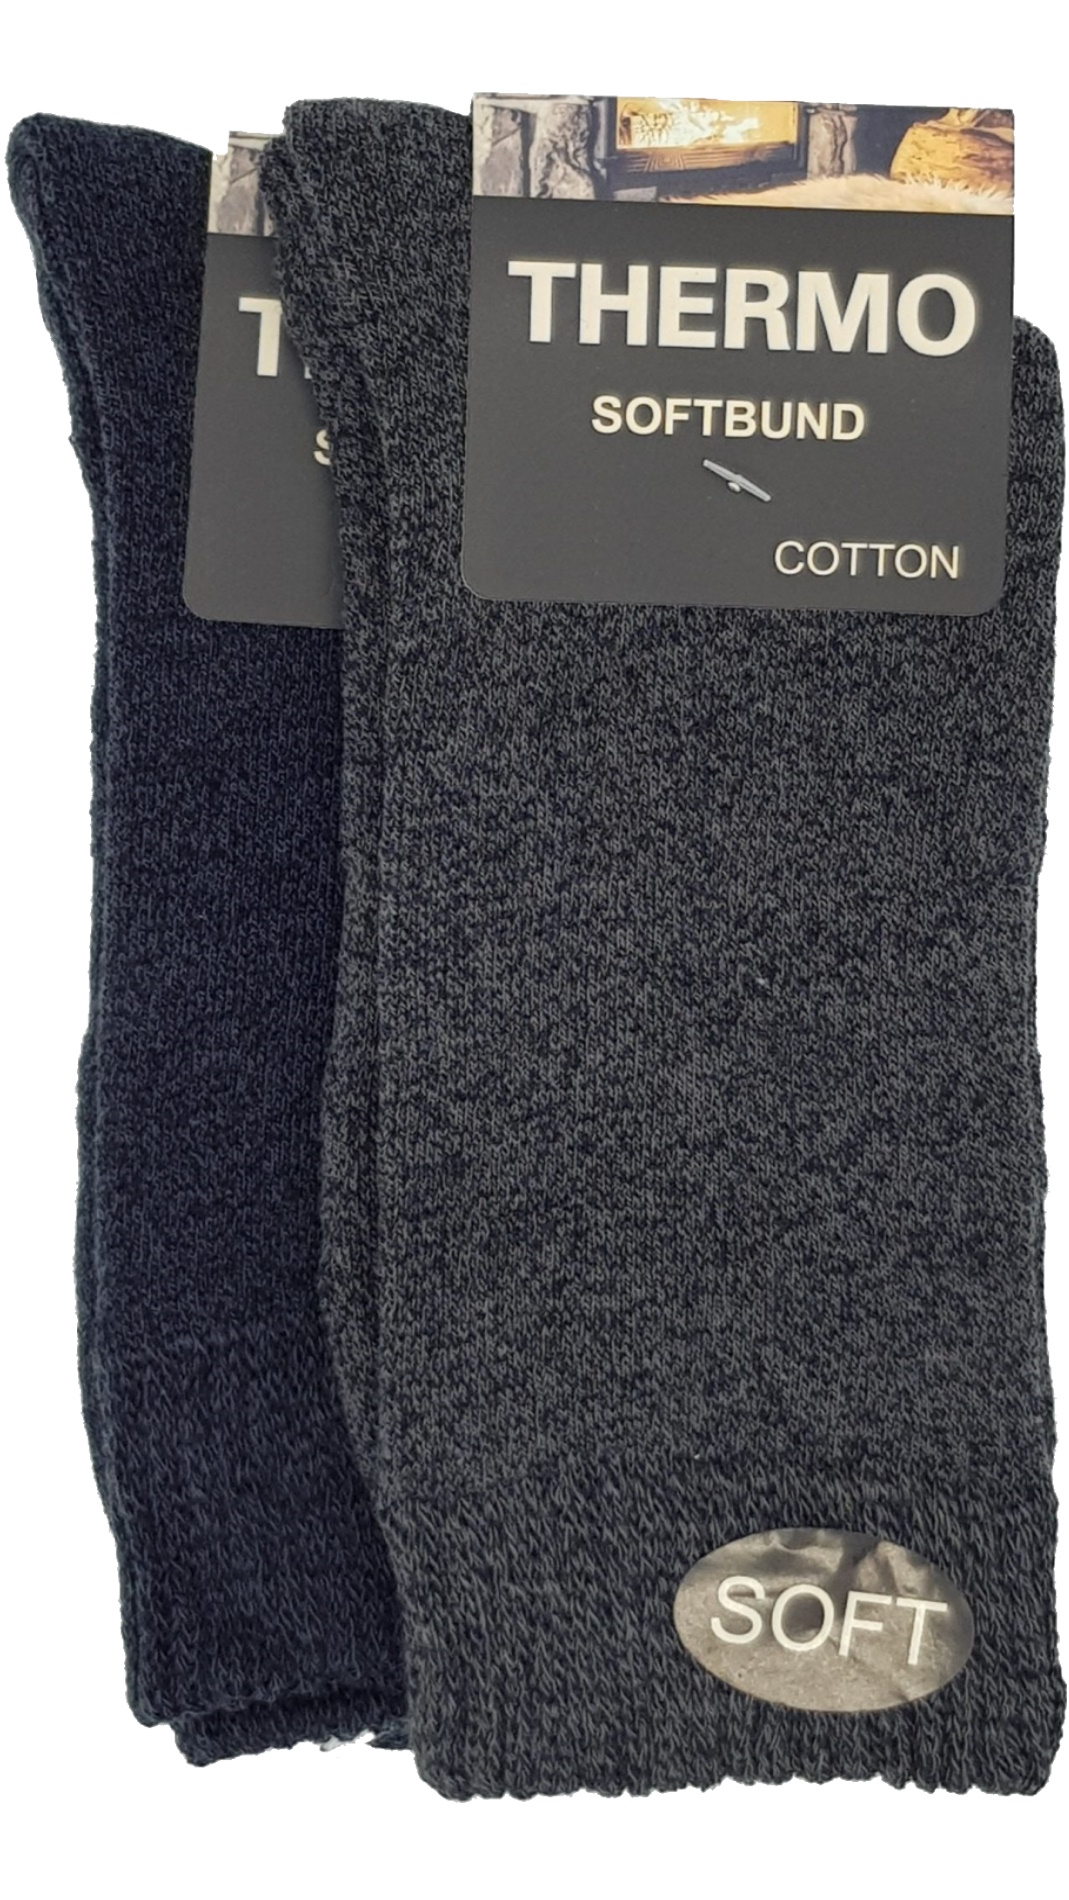 Thermo Soft Socken Softbund 2 Paar (23402,38413) –